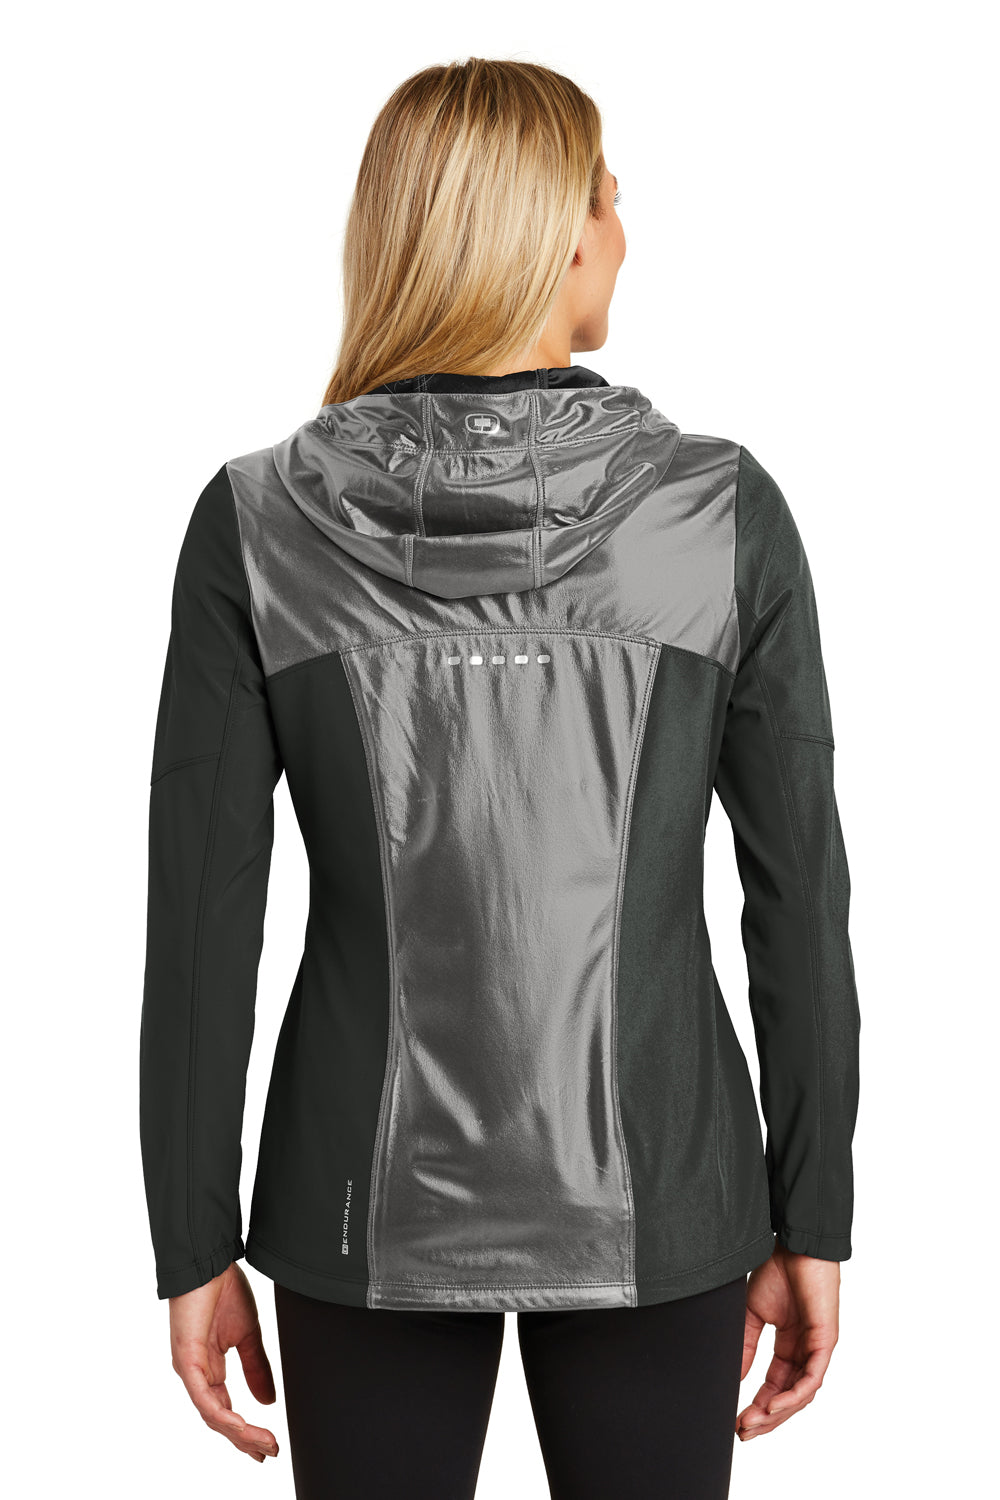 Ogio LOE723 Womens Endurance Liquid Wind & Water Resistant Full Zip Hooded Jacket Black Back